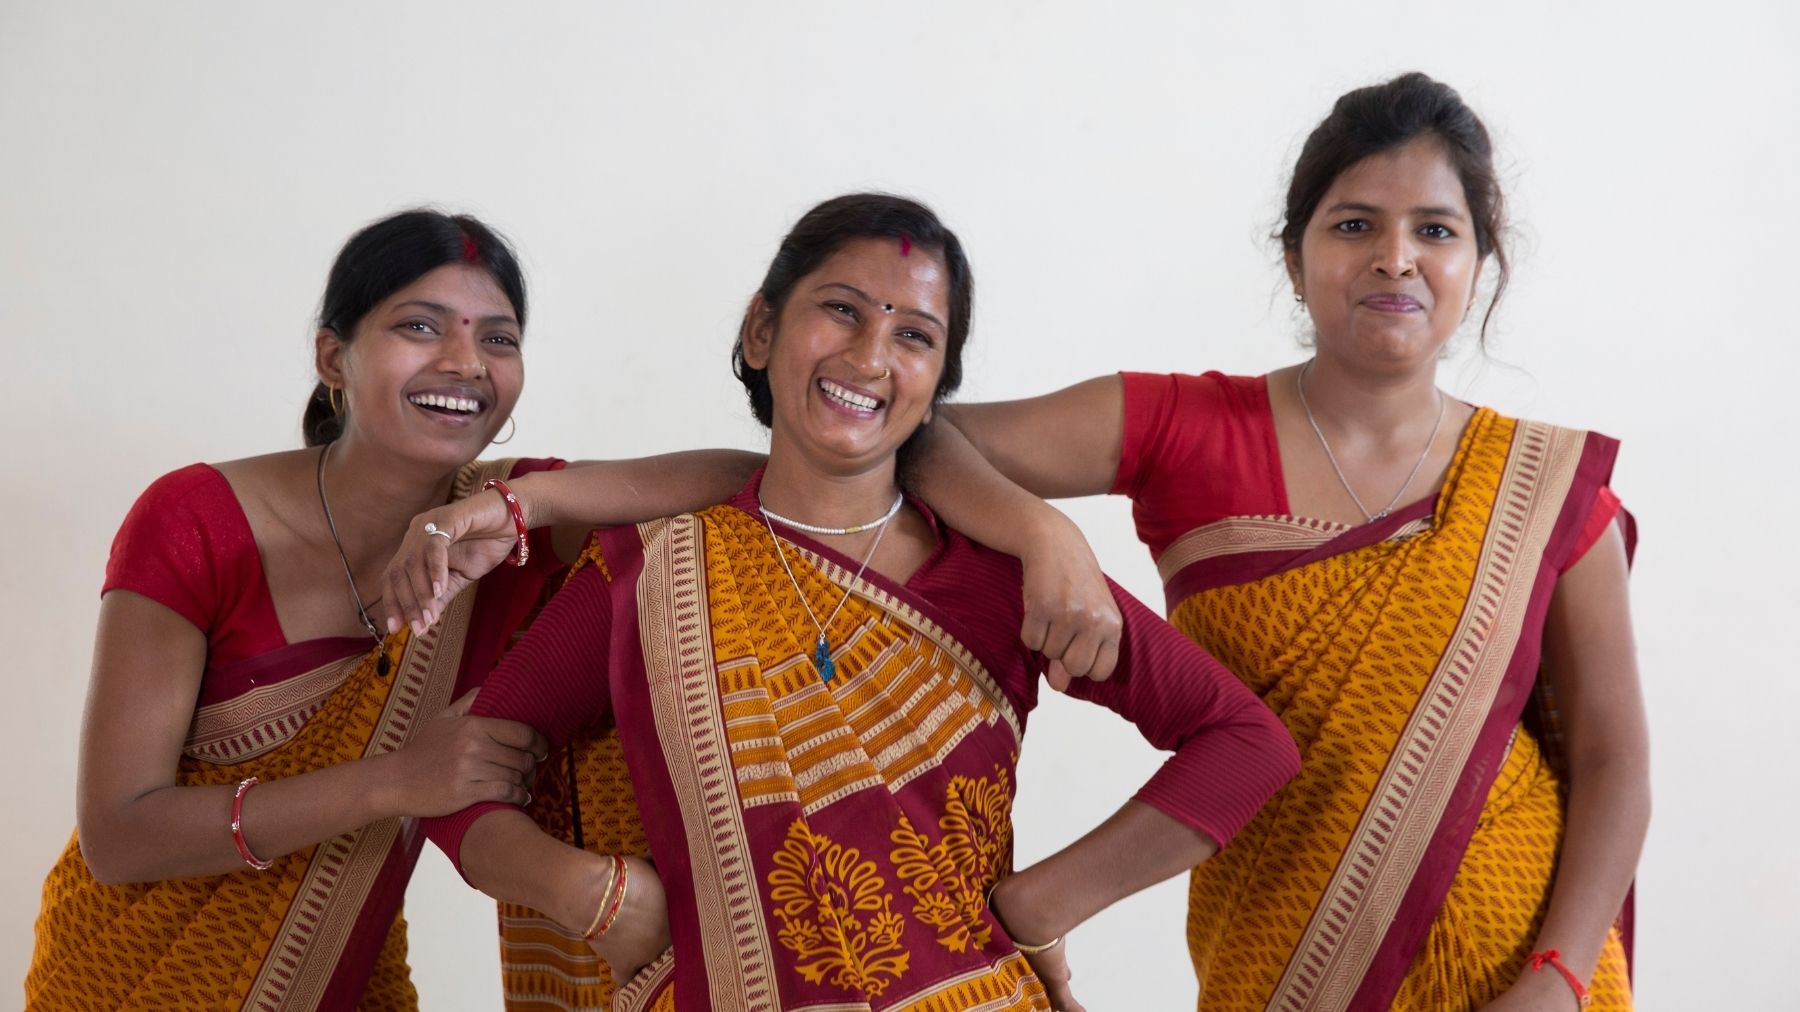 Unsere Kolleg:innen in Varanasi fertigen jede Matte mit ihren Händen und haben jede Menge Spaß dabei